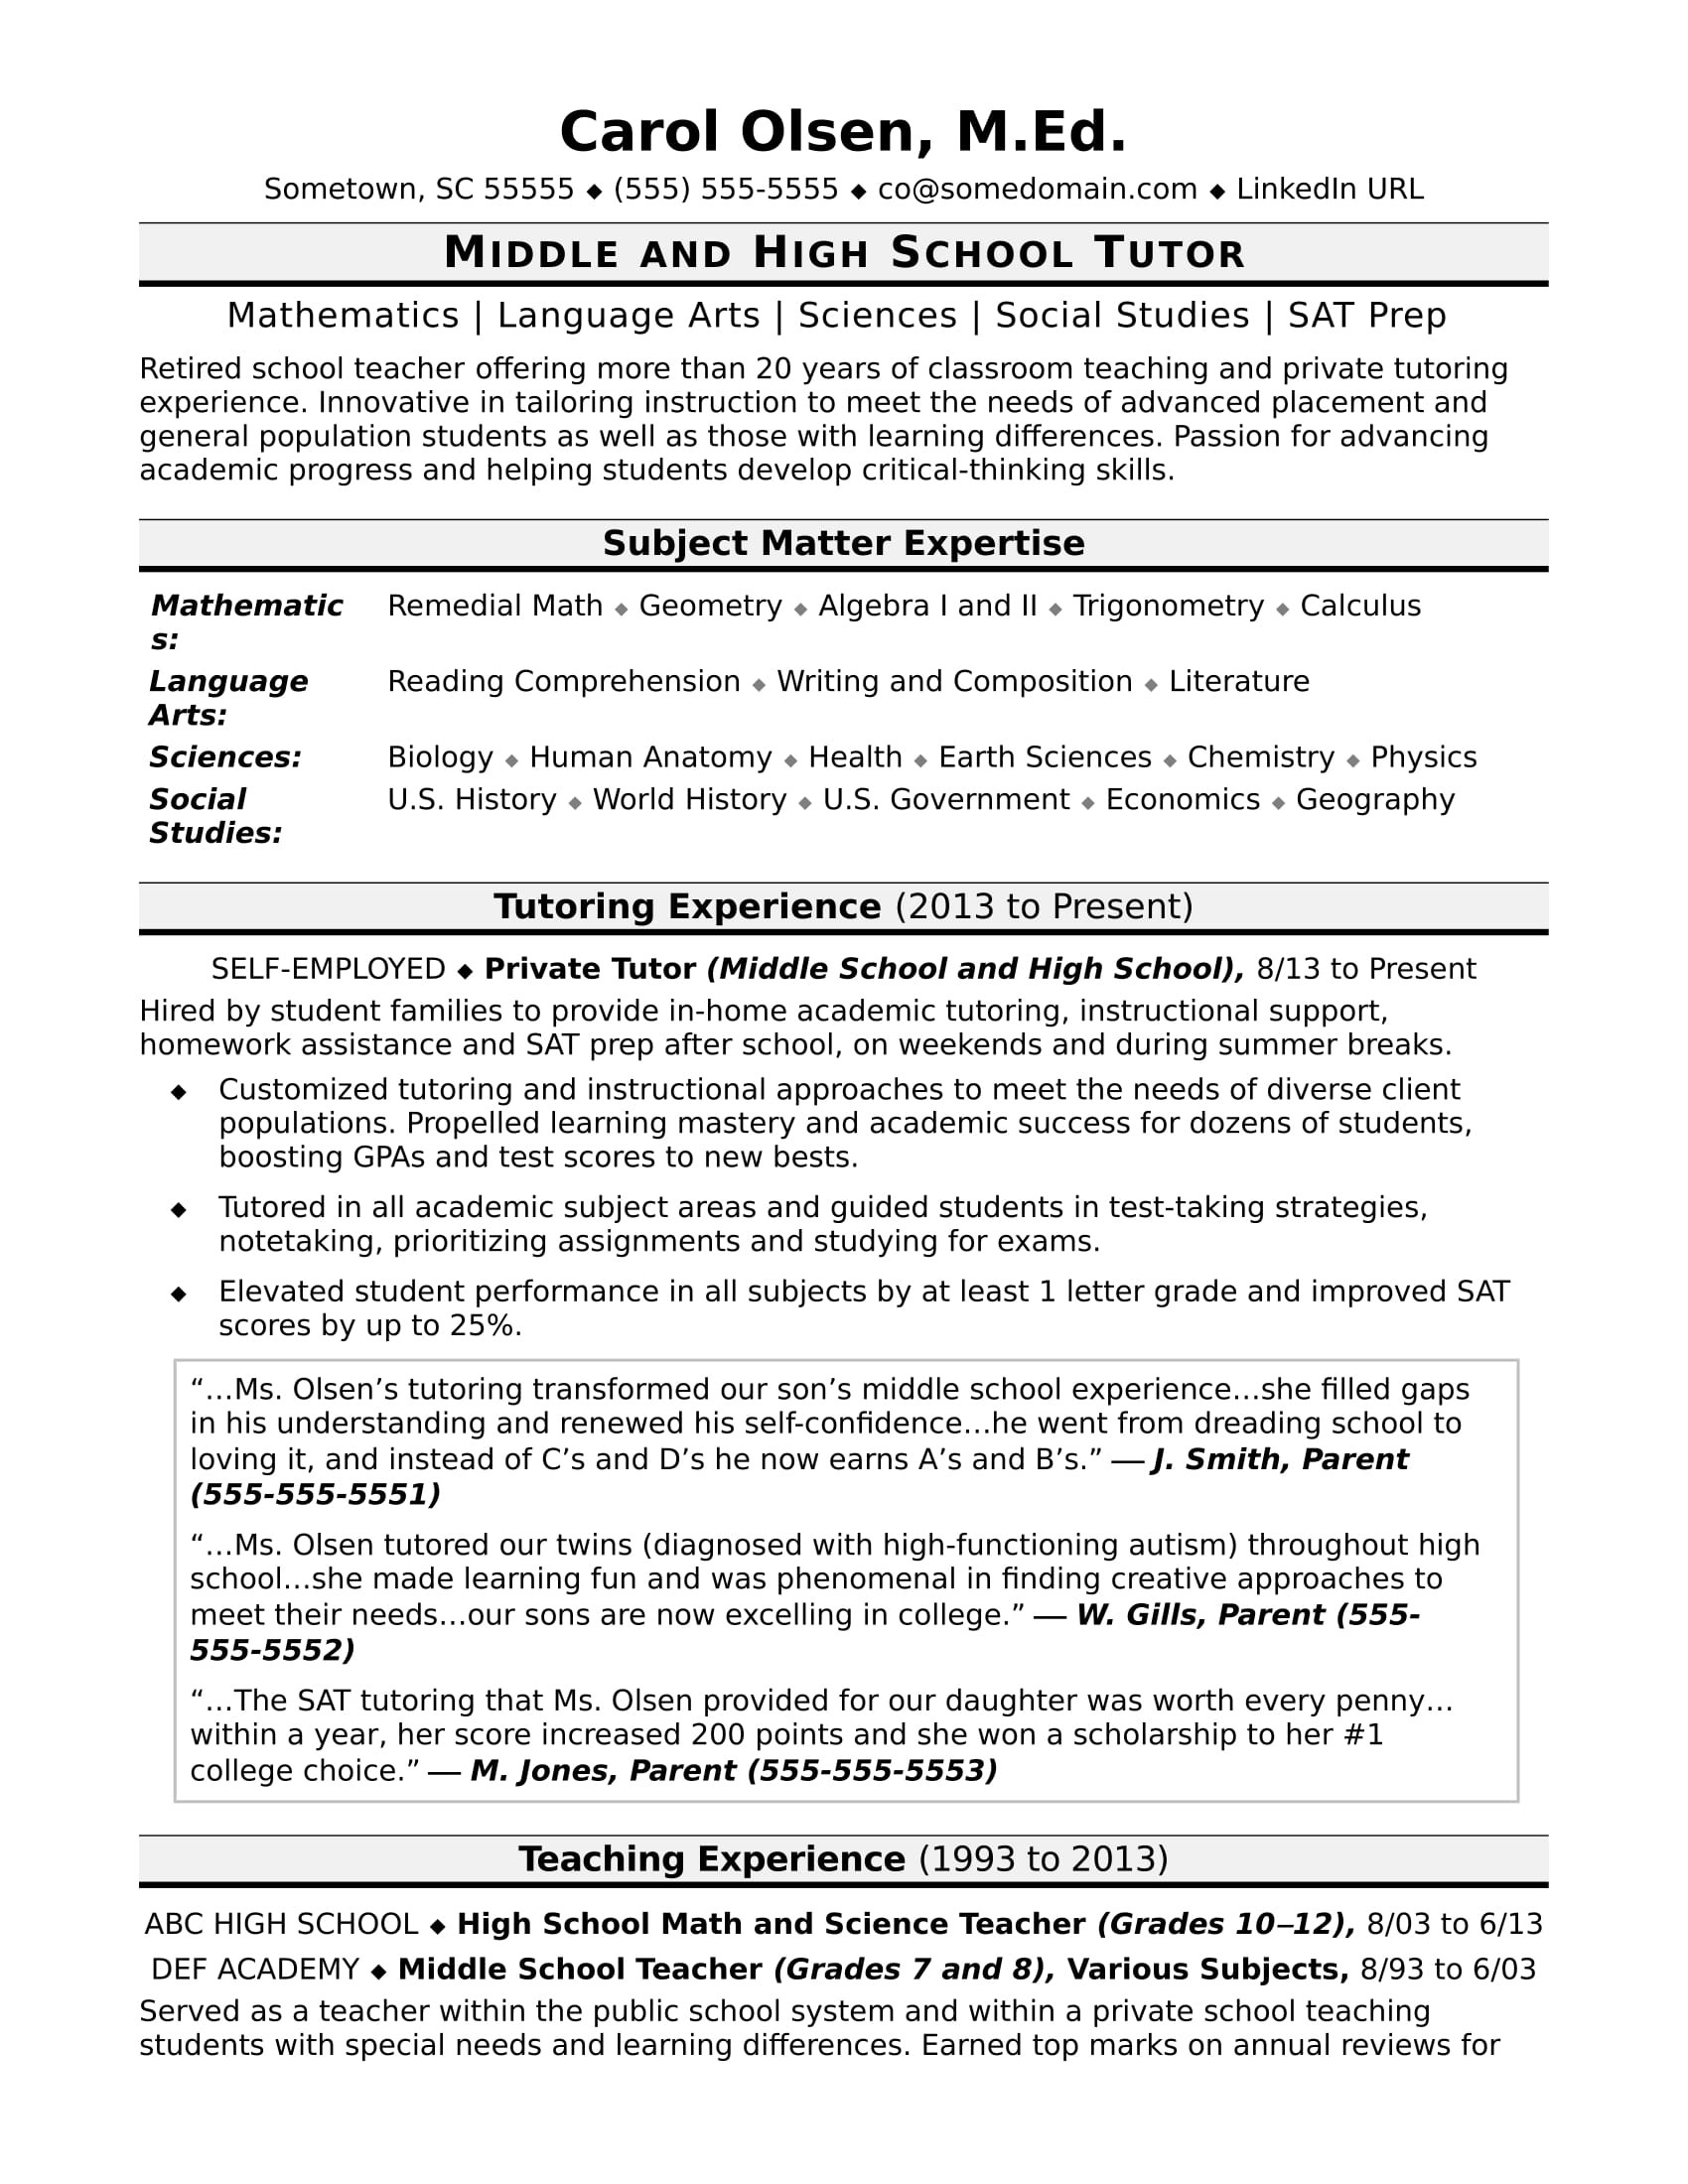 tutor resume sample